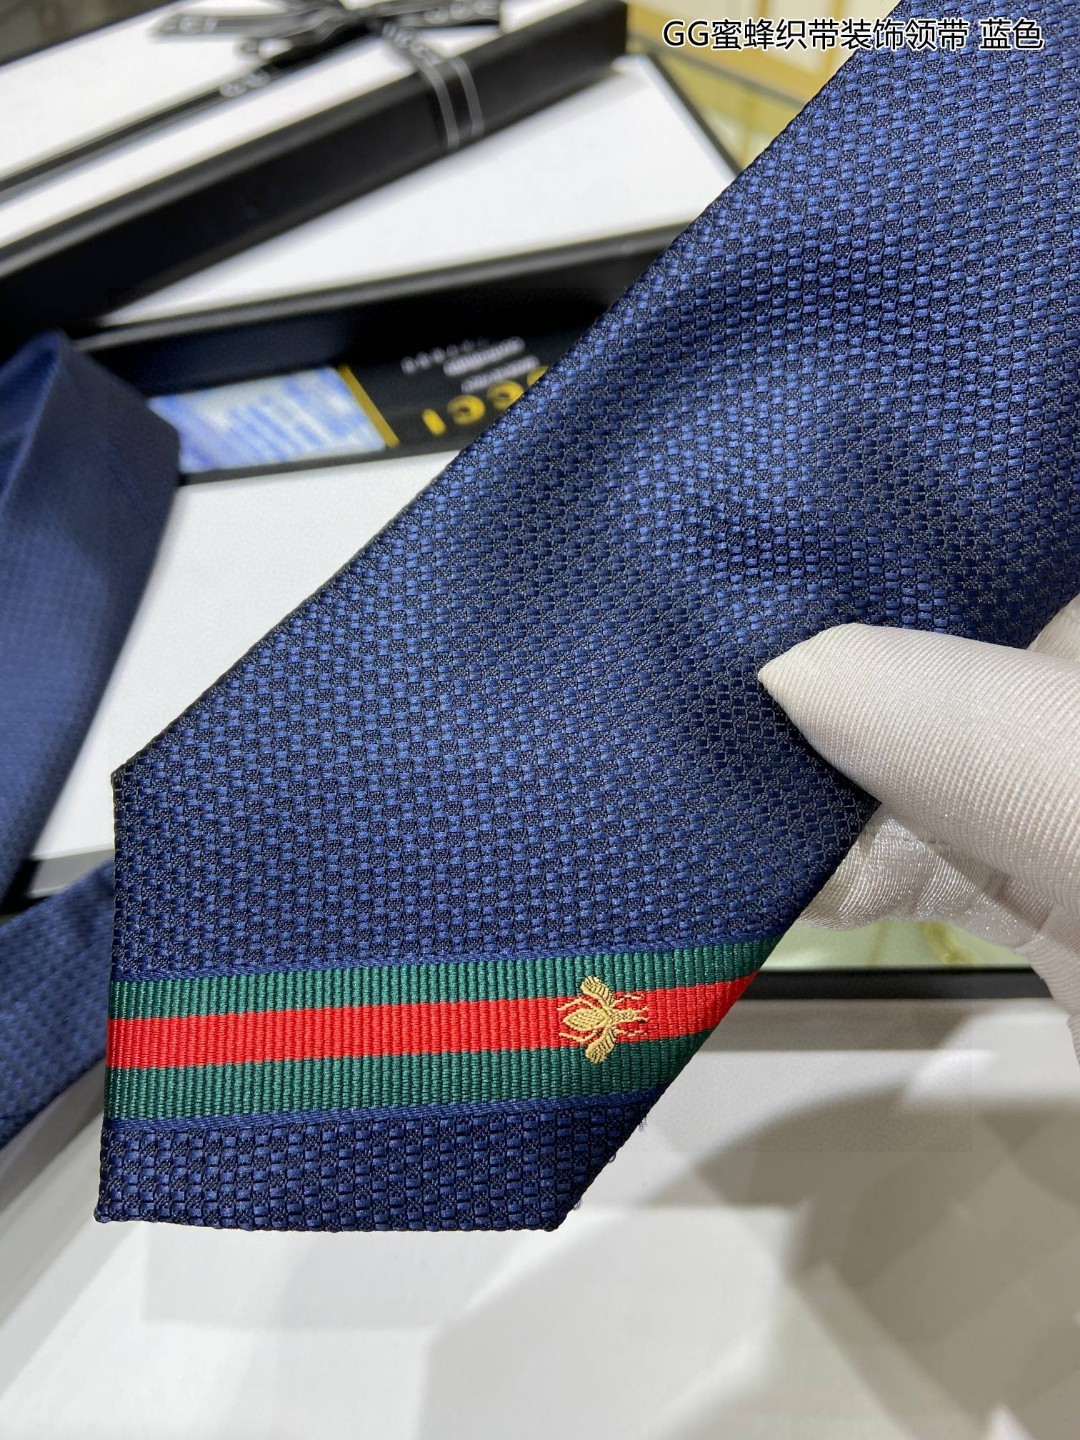 特价家男士领带系列GG蜜蜂织带装饰领带稀有展现精湛手工与时尚优雅的理想选择这款领带将标志性的主题动物小蜜